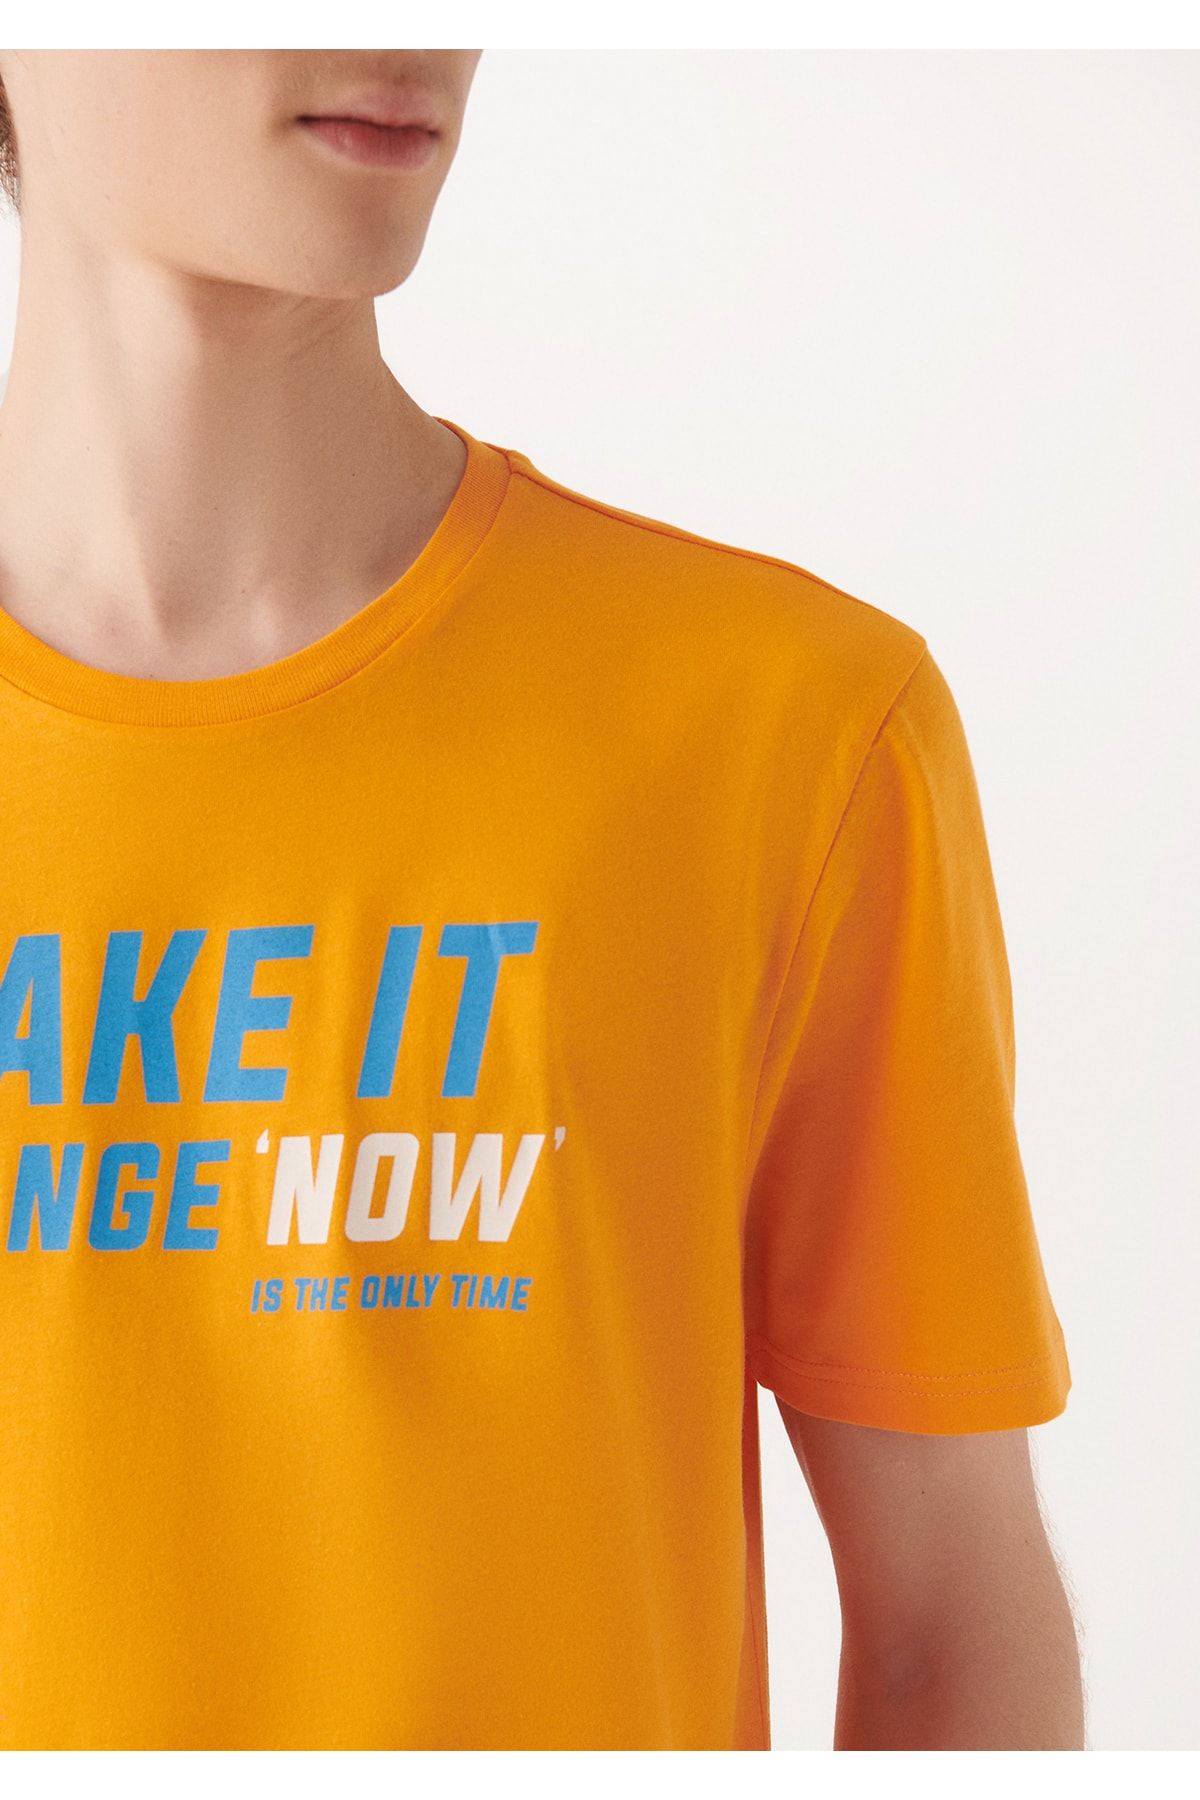 Mavi تی شرت نارنجی چاپی باریک / برش 8810549-71388